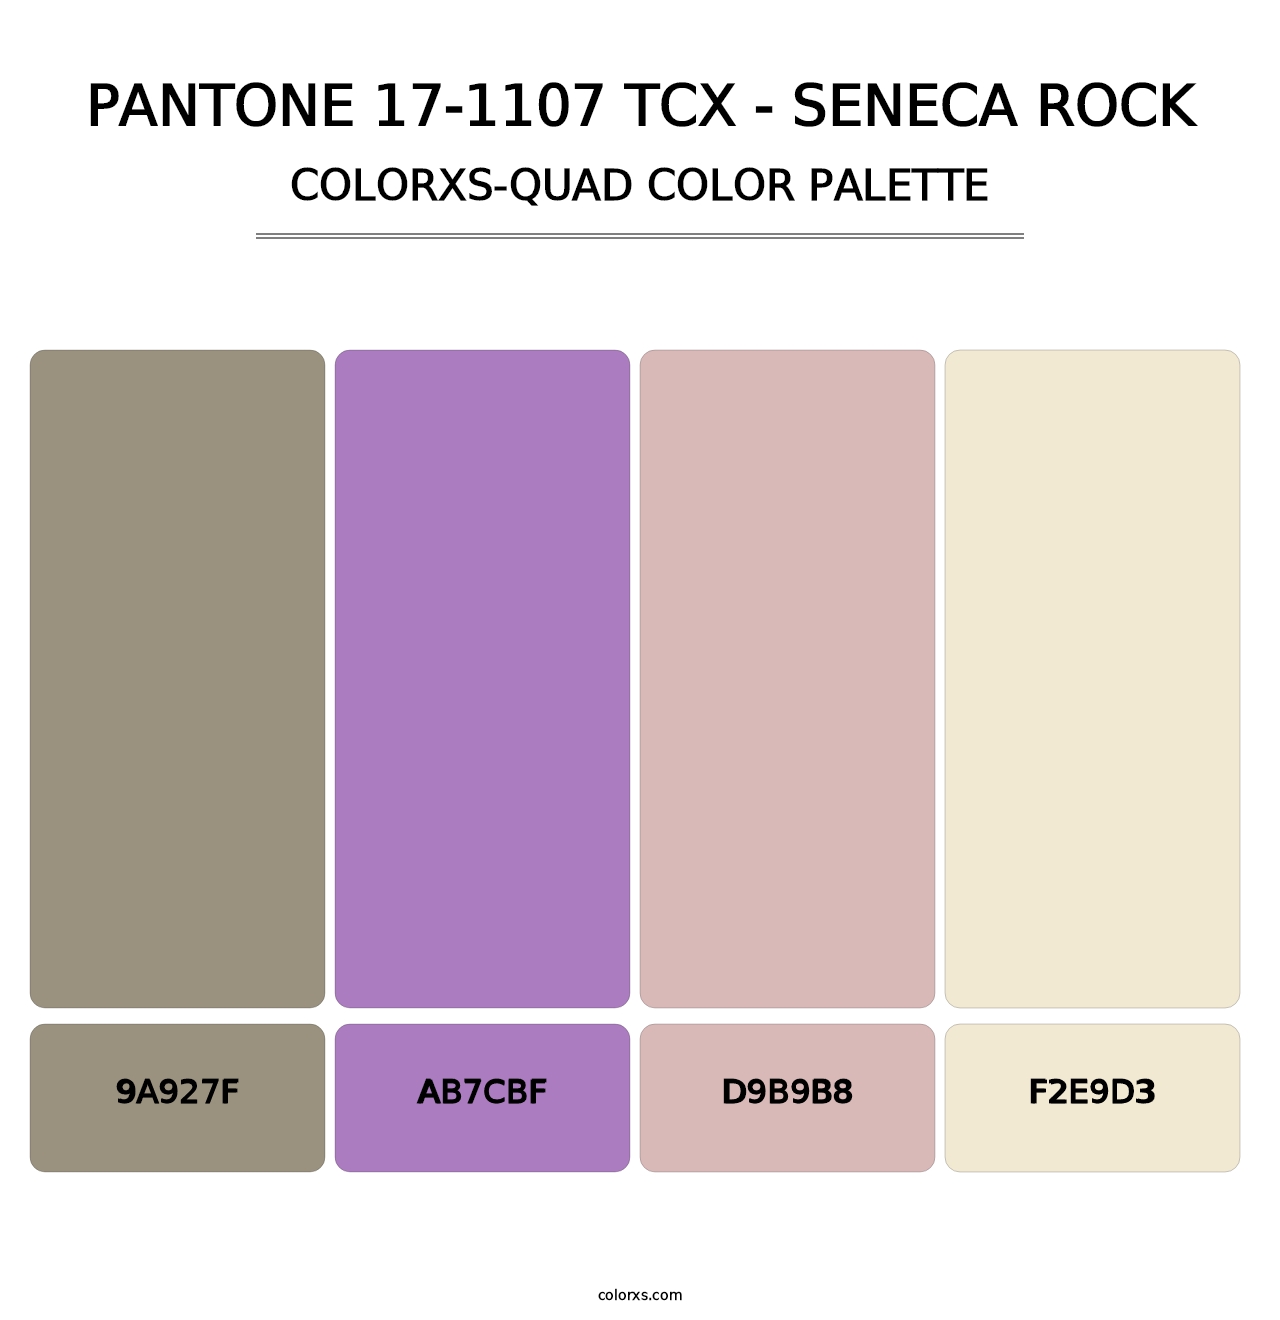 PANTONE 17-1107 TCX - Seneca Rock - Colorxs Quad Palette